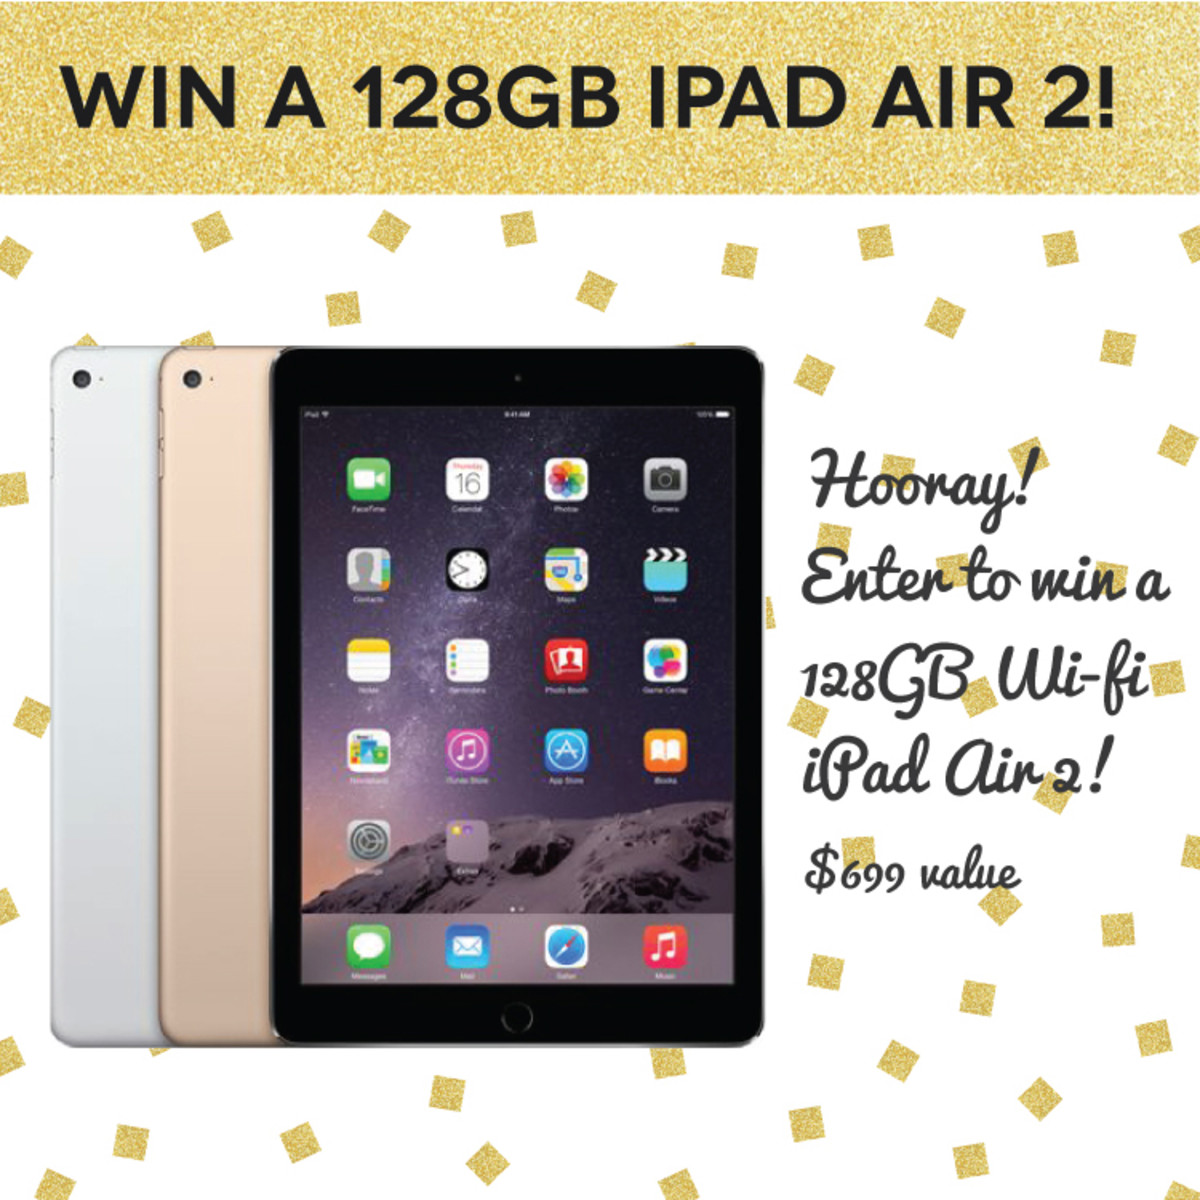 WIN a 128GB iPad Air 2!